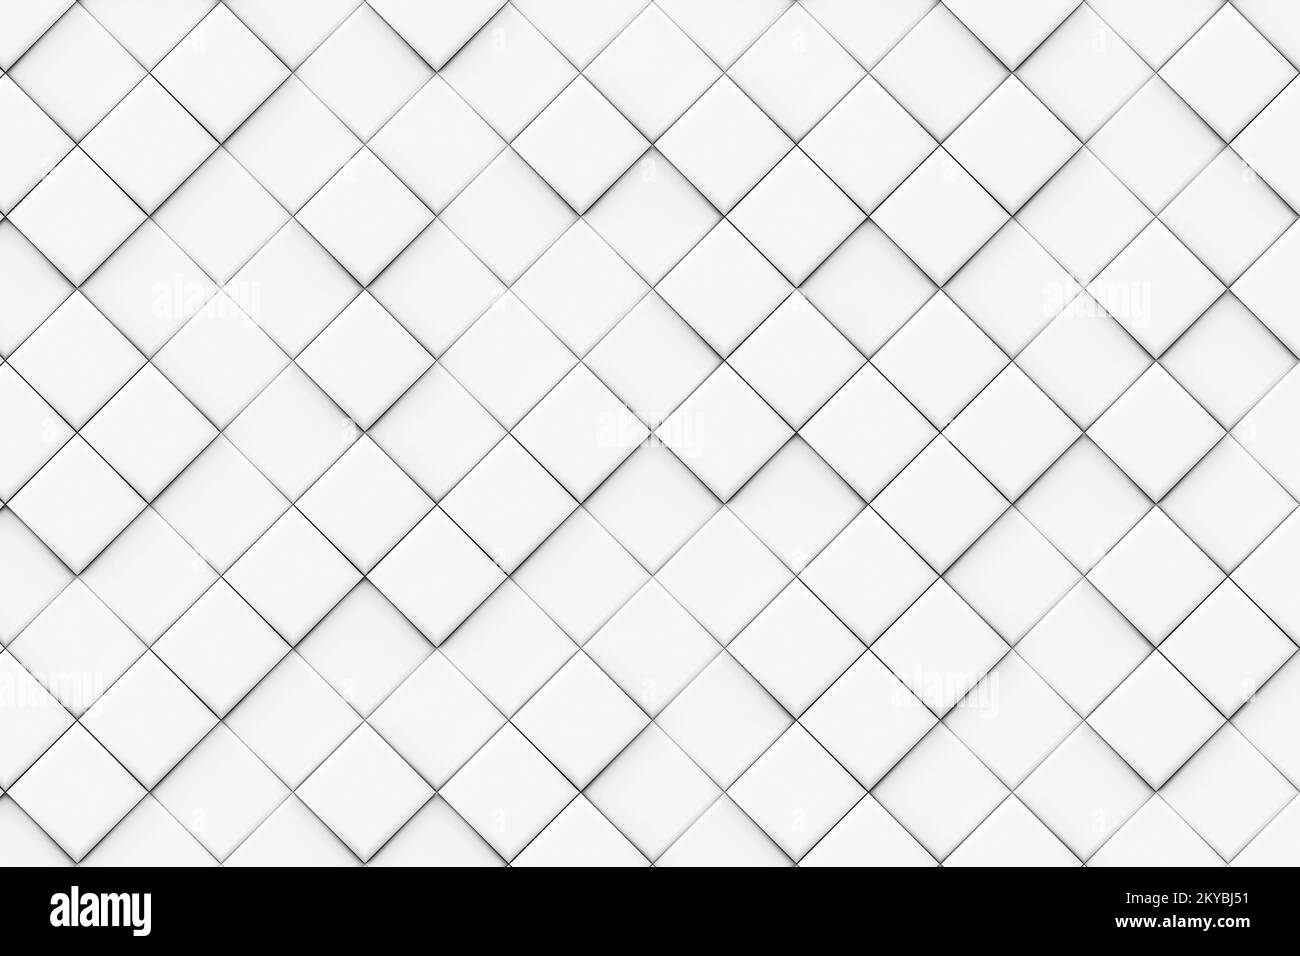 Arrière-plan de motif de mosaïque de losange blanc et gris, carré diagonal monochrome de motif, arrière-plan de motif abstrait, rendu 3D Banque D'Images